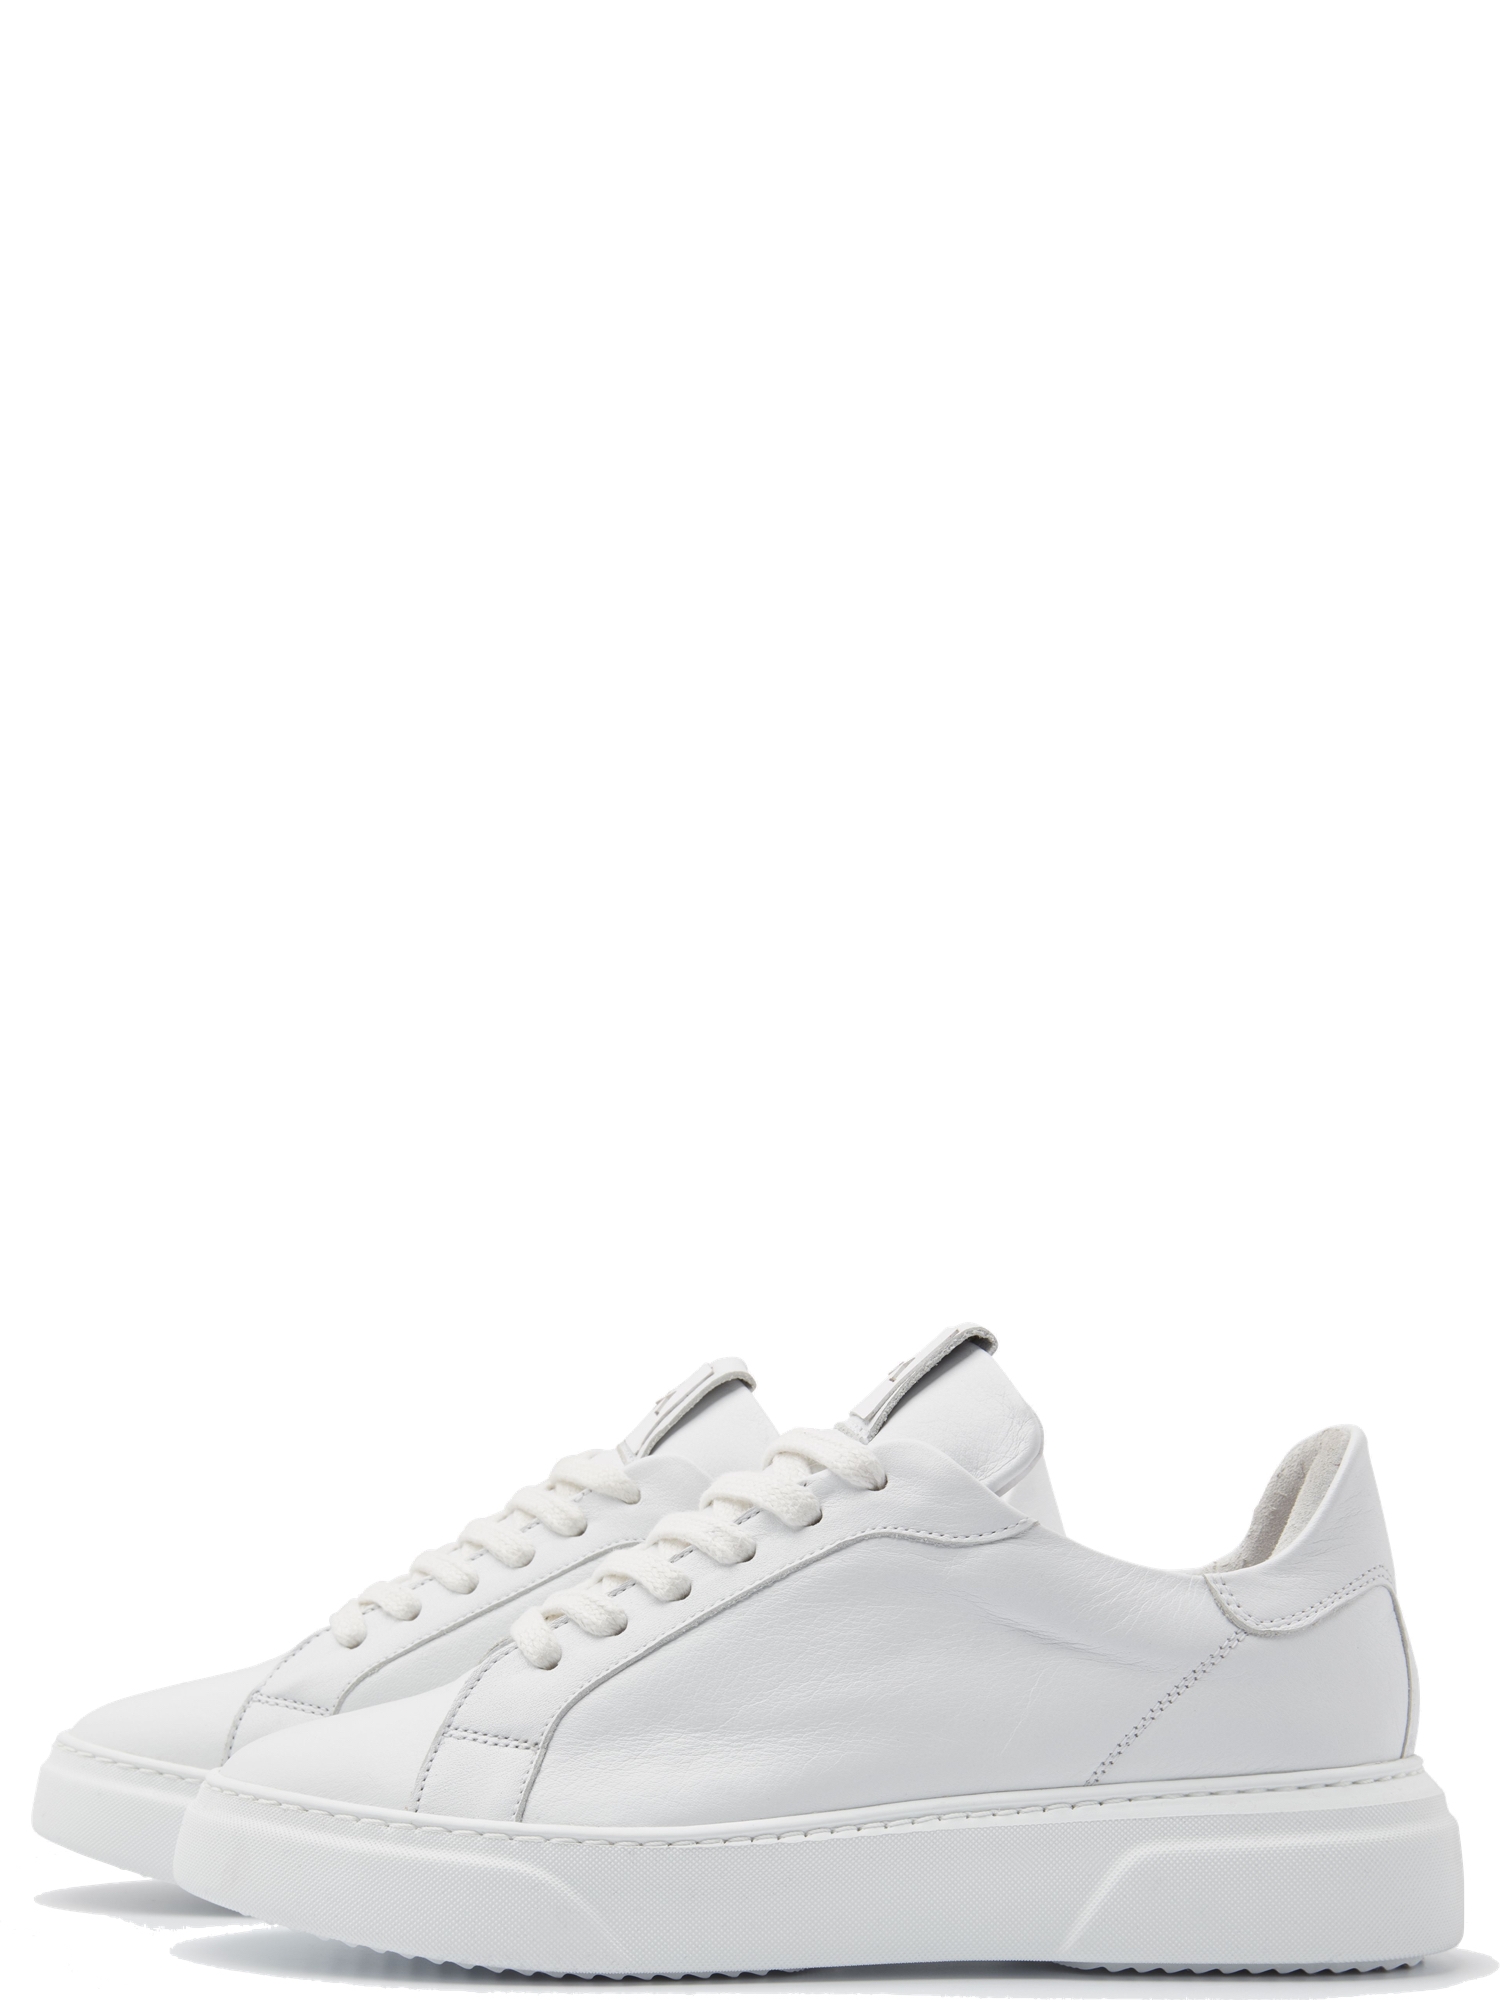 Stearinlys boble fordelagtige Juno Sneakers i Hvid fra Via Vai → køb her